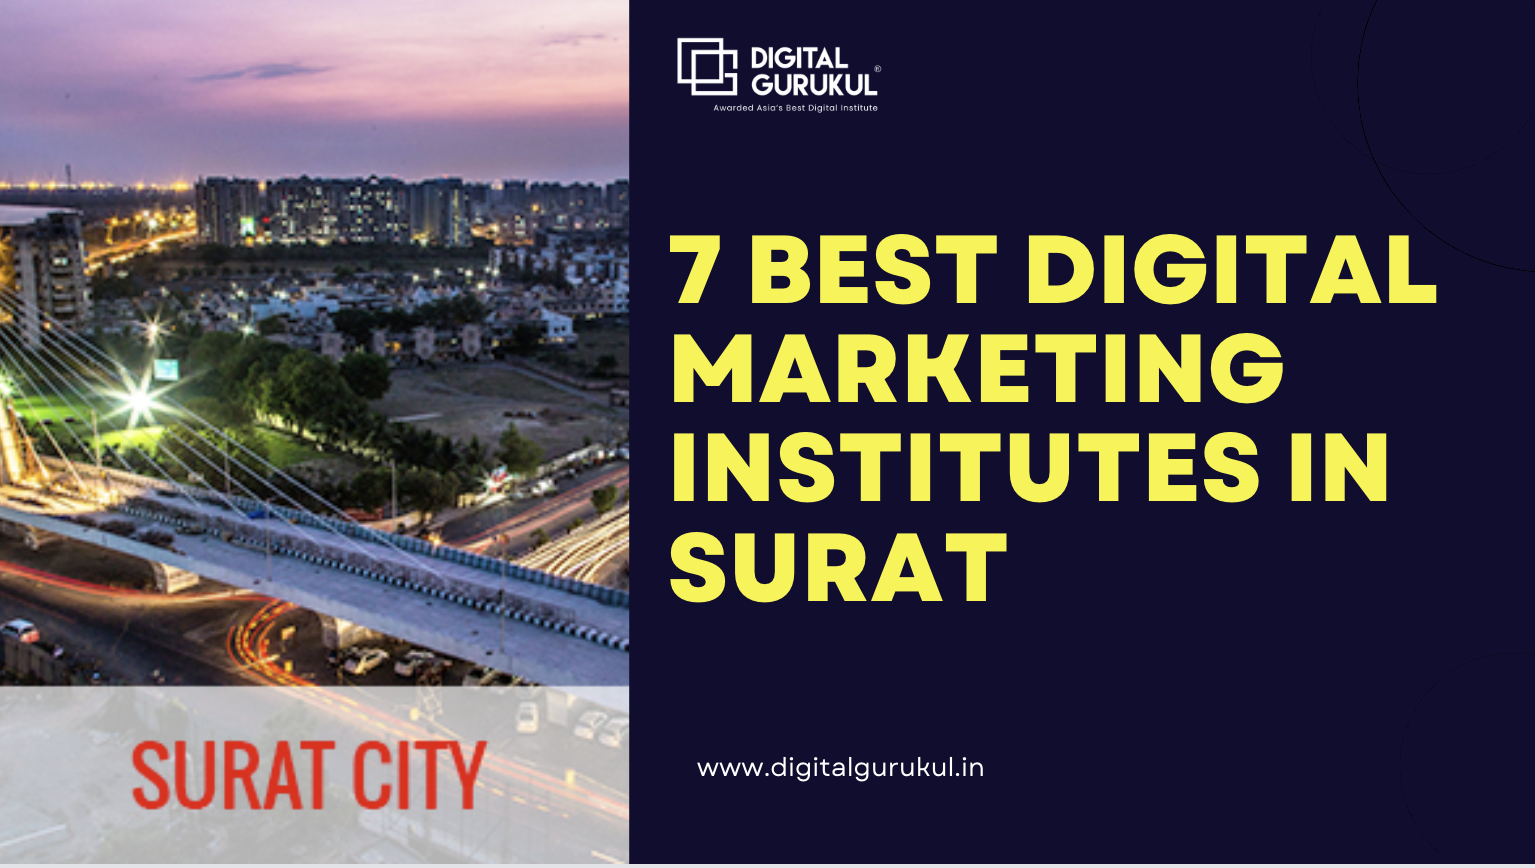 7 Best Digital Marketing Institutes in Surat